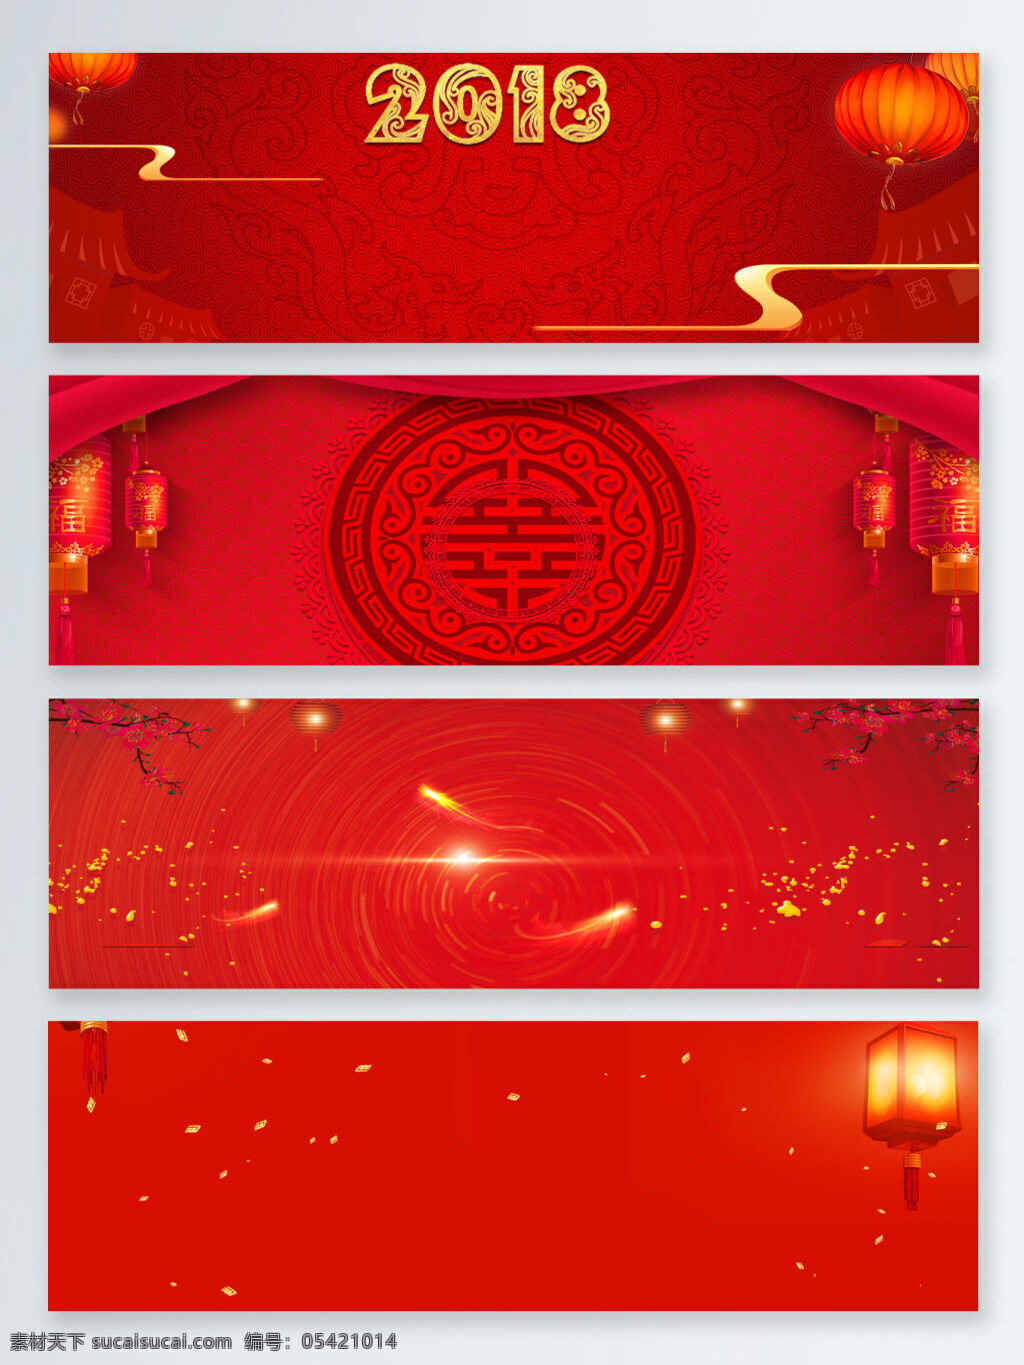 2018 中国 年 新年 红色 节日 背景 图 banner 创意 大红灯笼 狗年 节日背景图 梅花 时尚 中国风 中国年